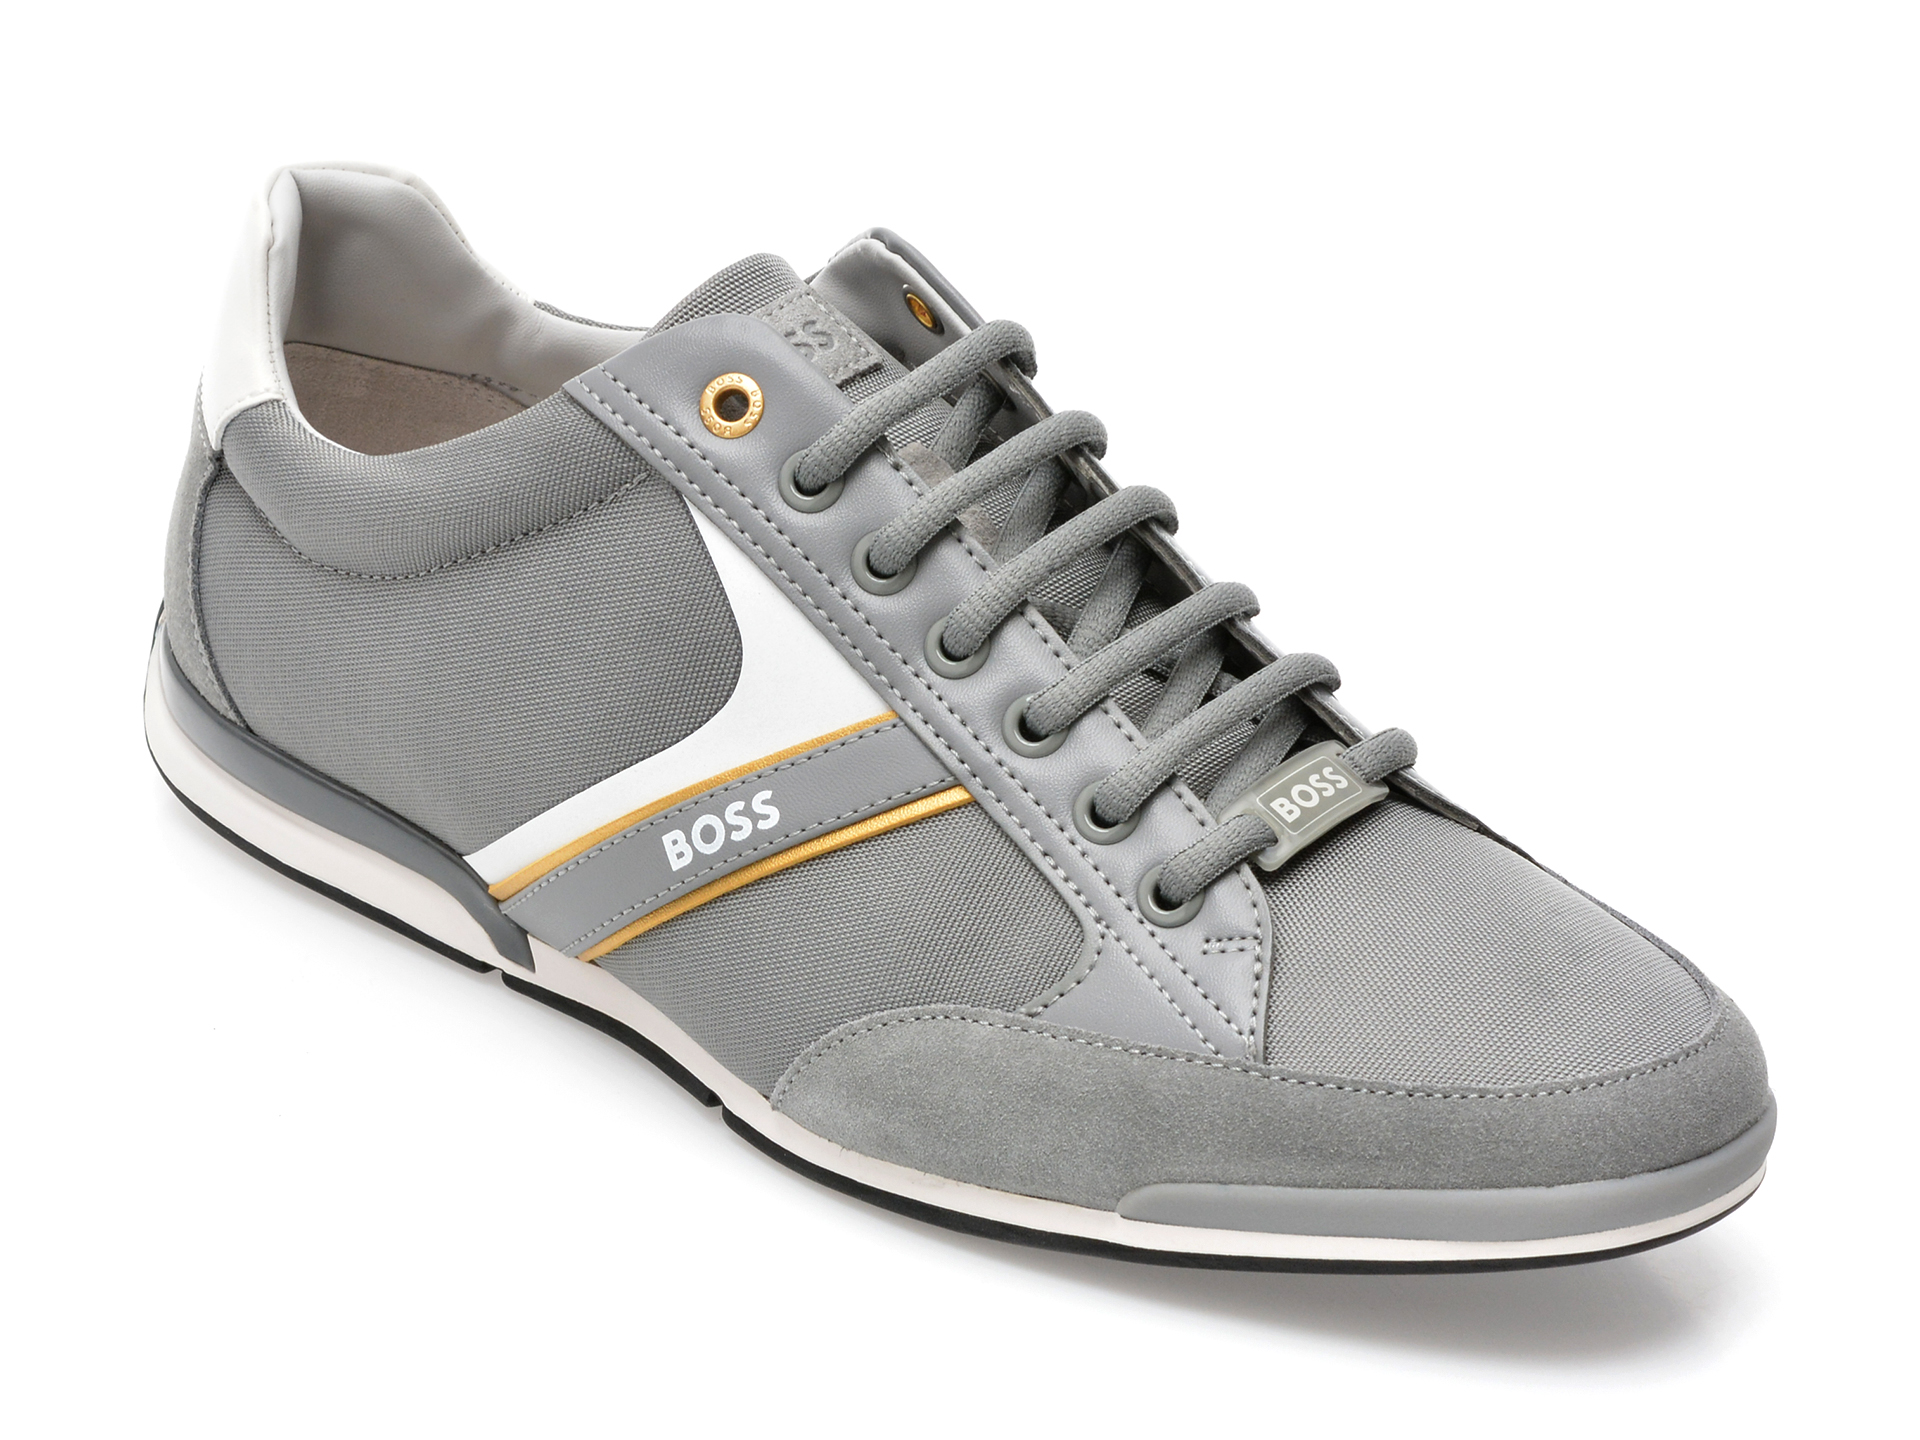 Pantofi sport HUGO BOSS gri, 1235, din material textil si piele naturala /barbati/pantofi